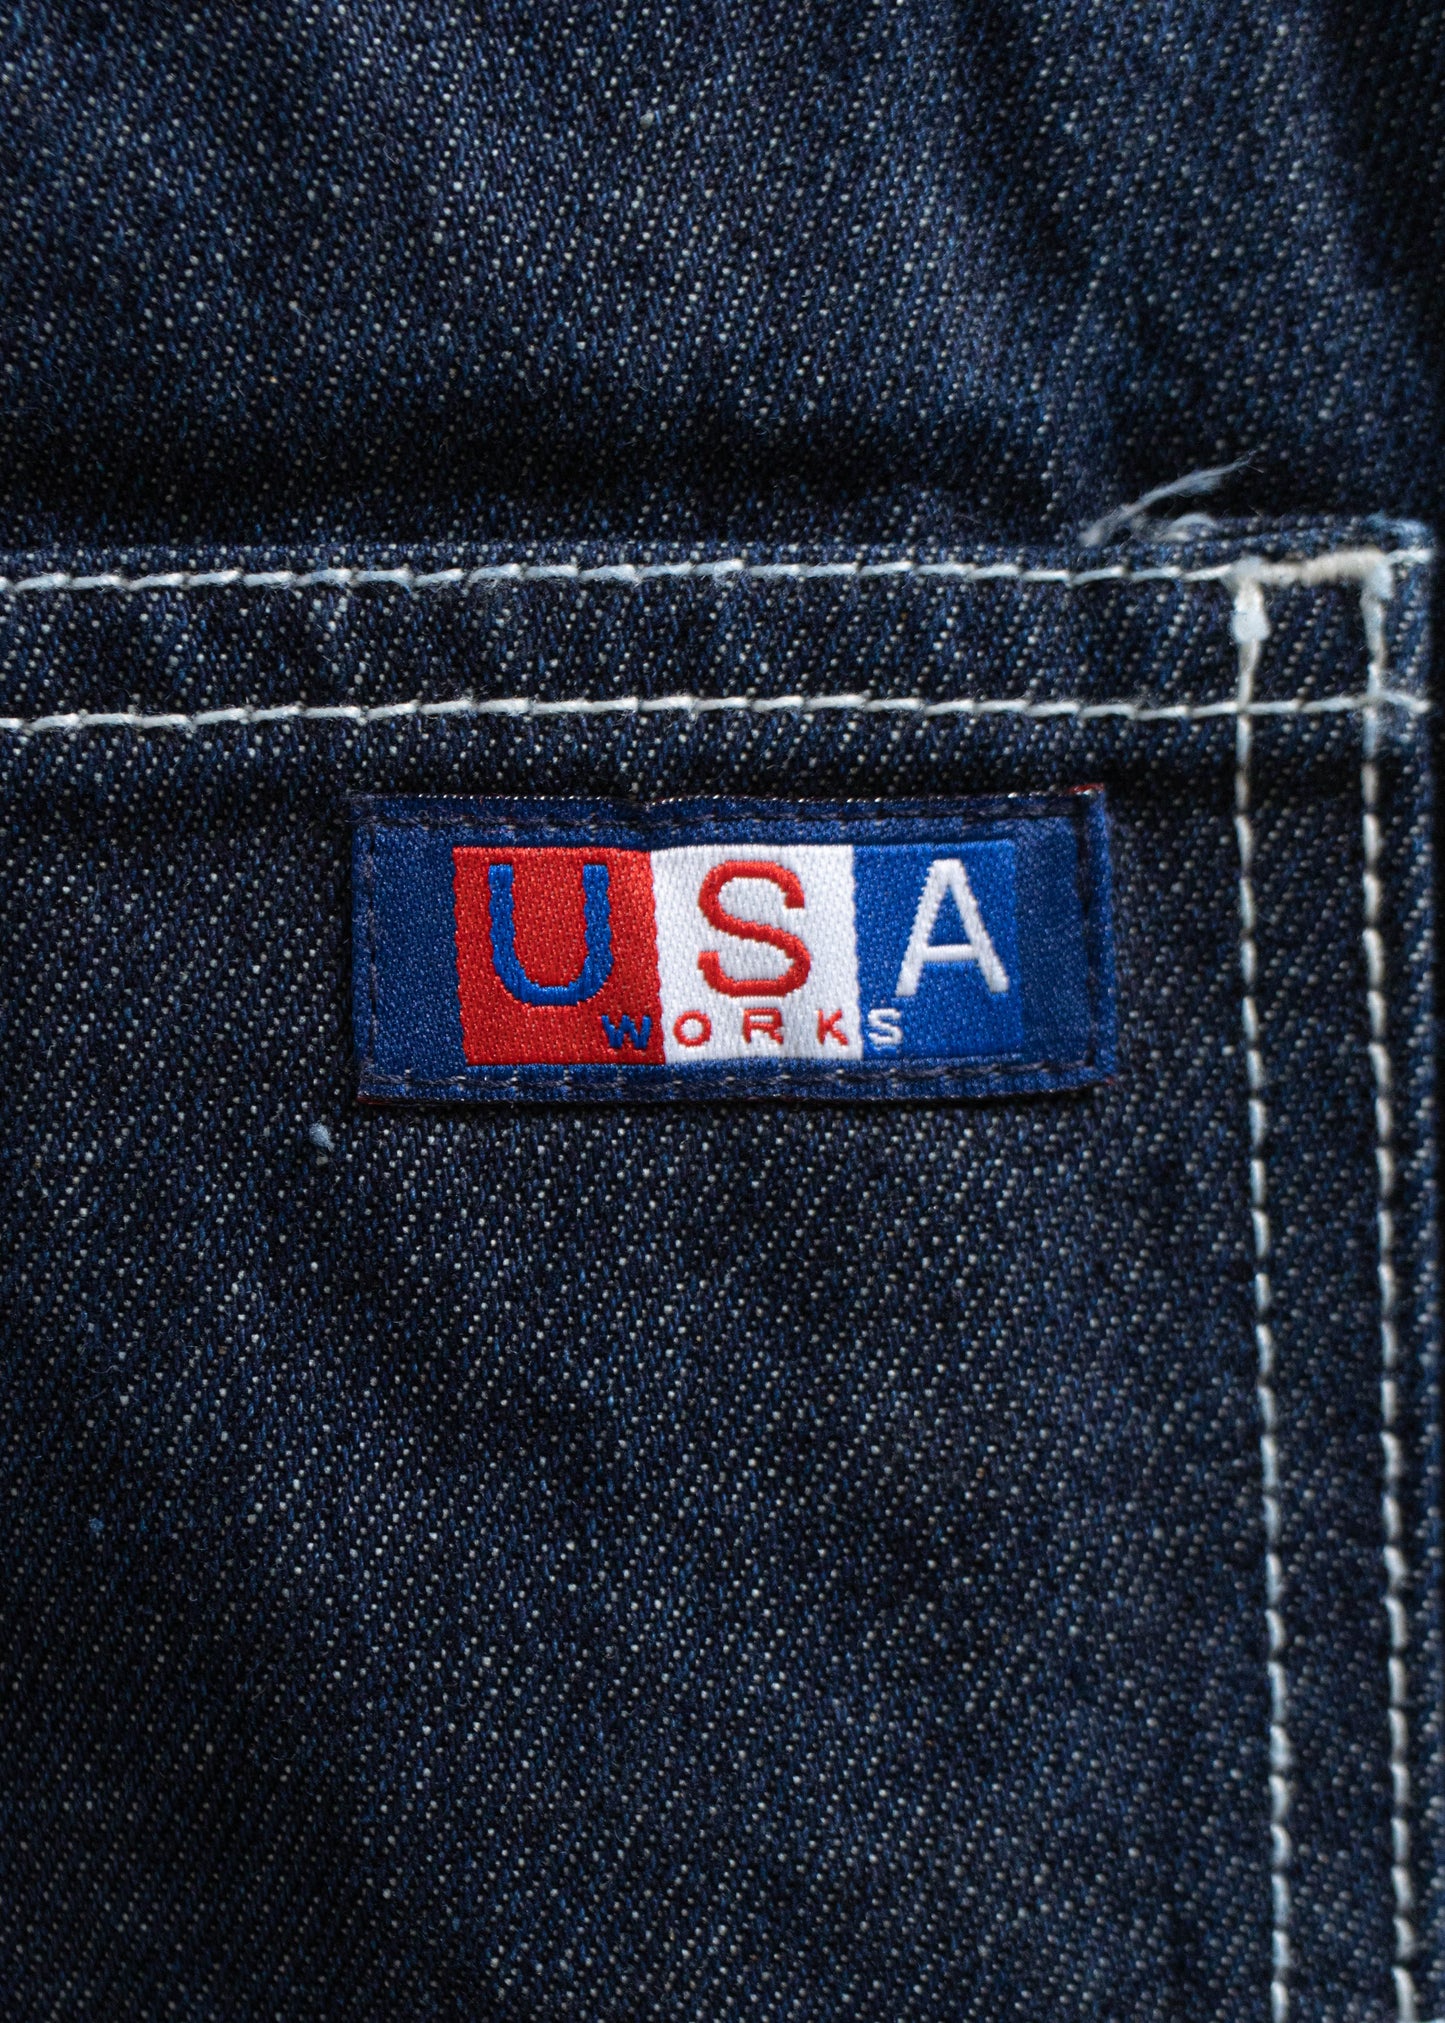 1980s USA Works Deadstock Denim Carpenter Pants Size Women's 34 Men's 36